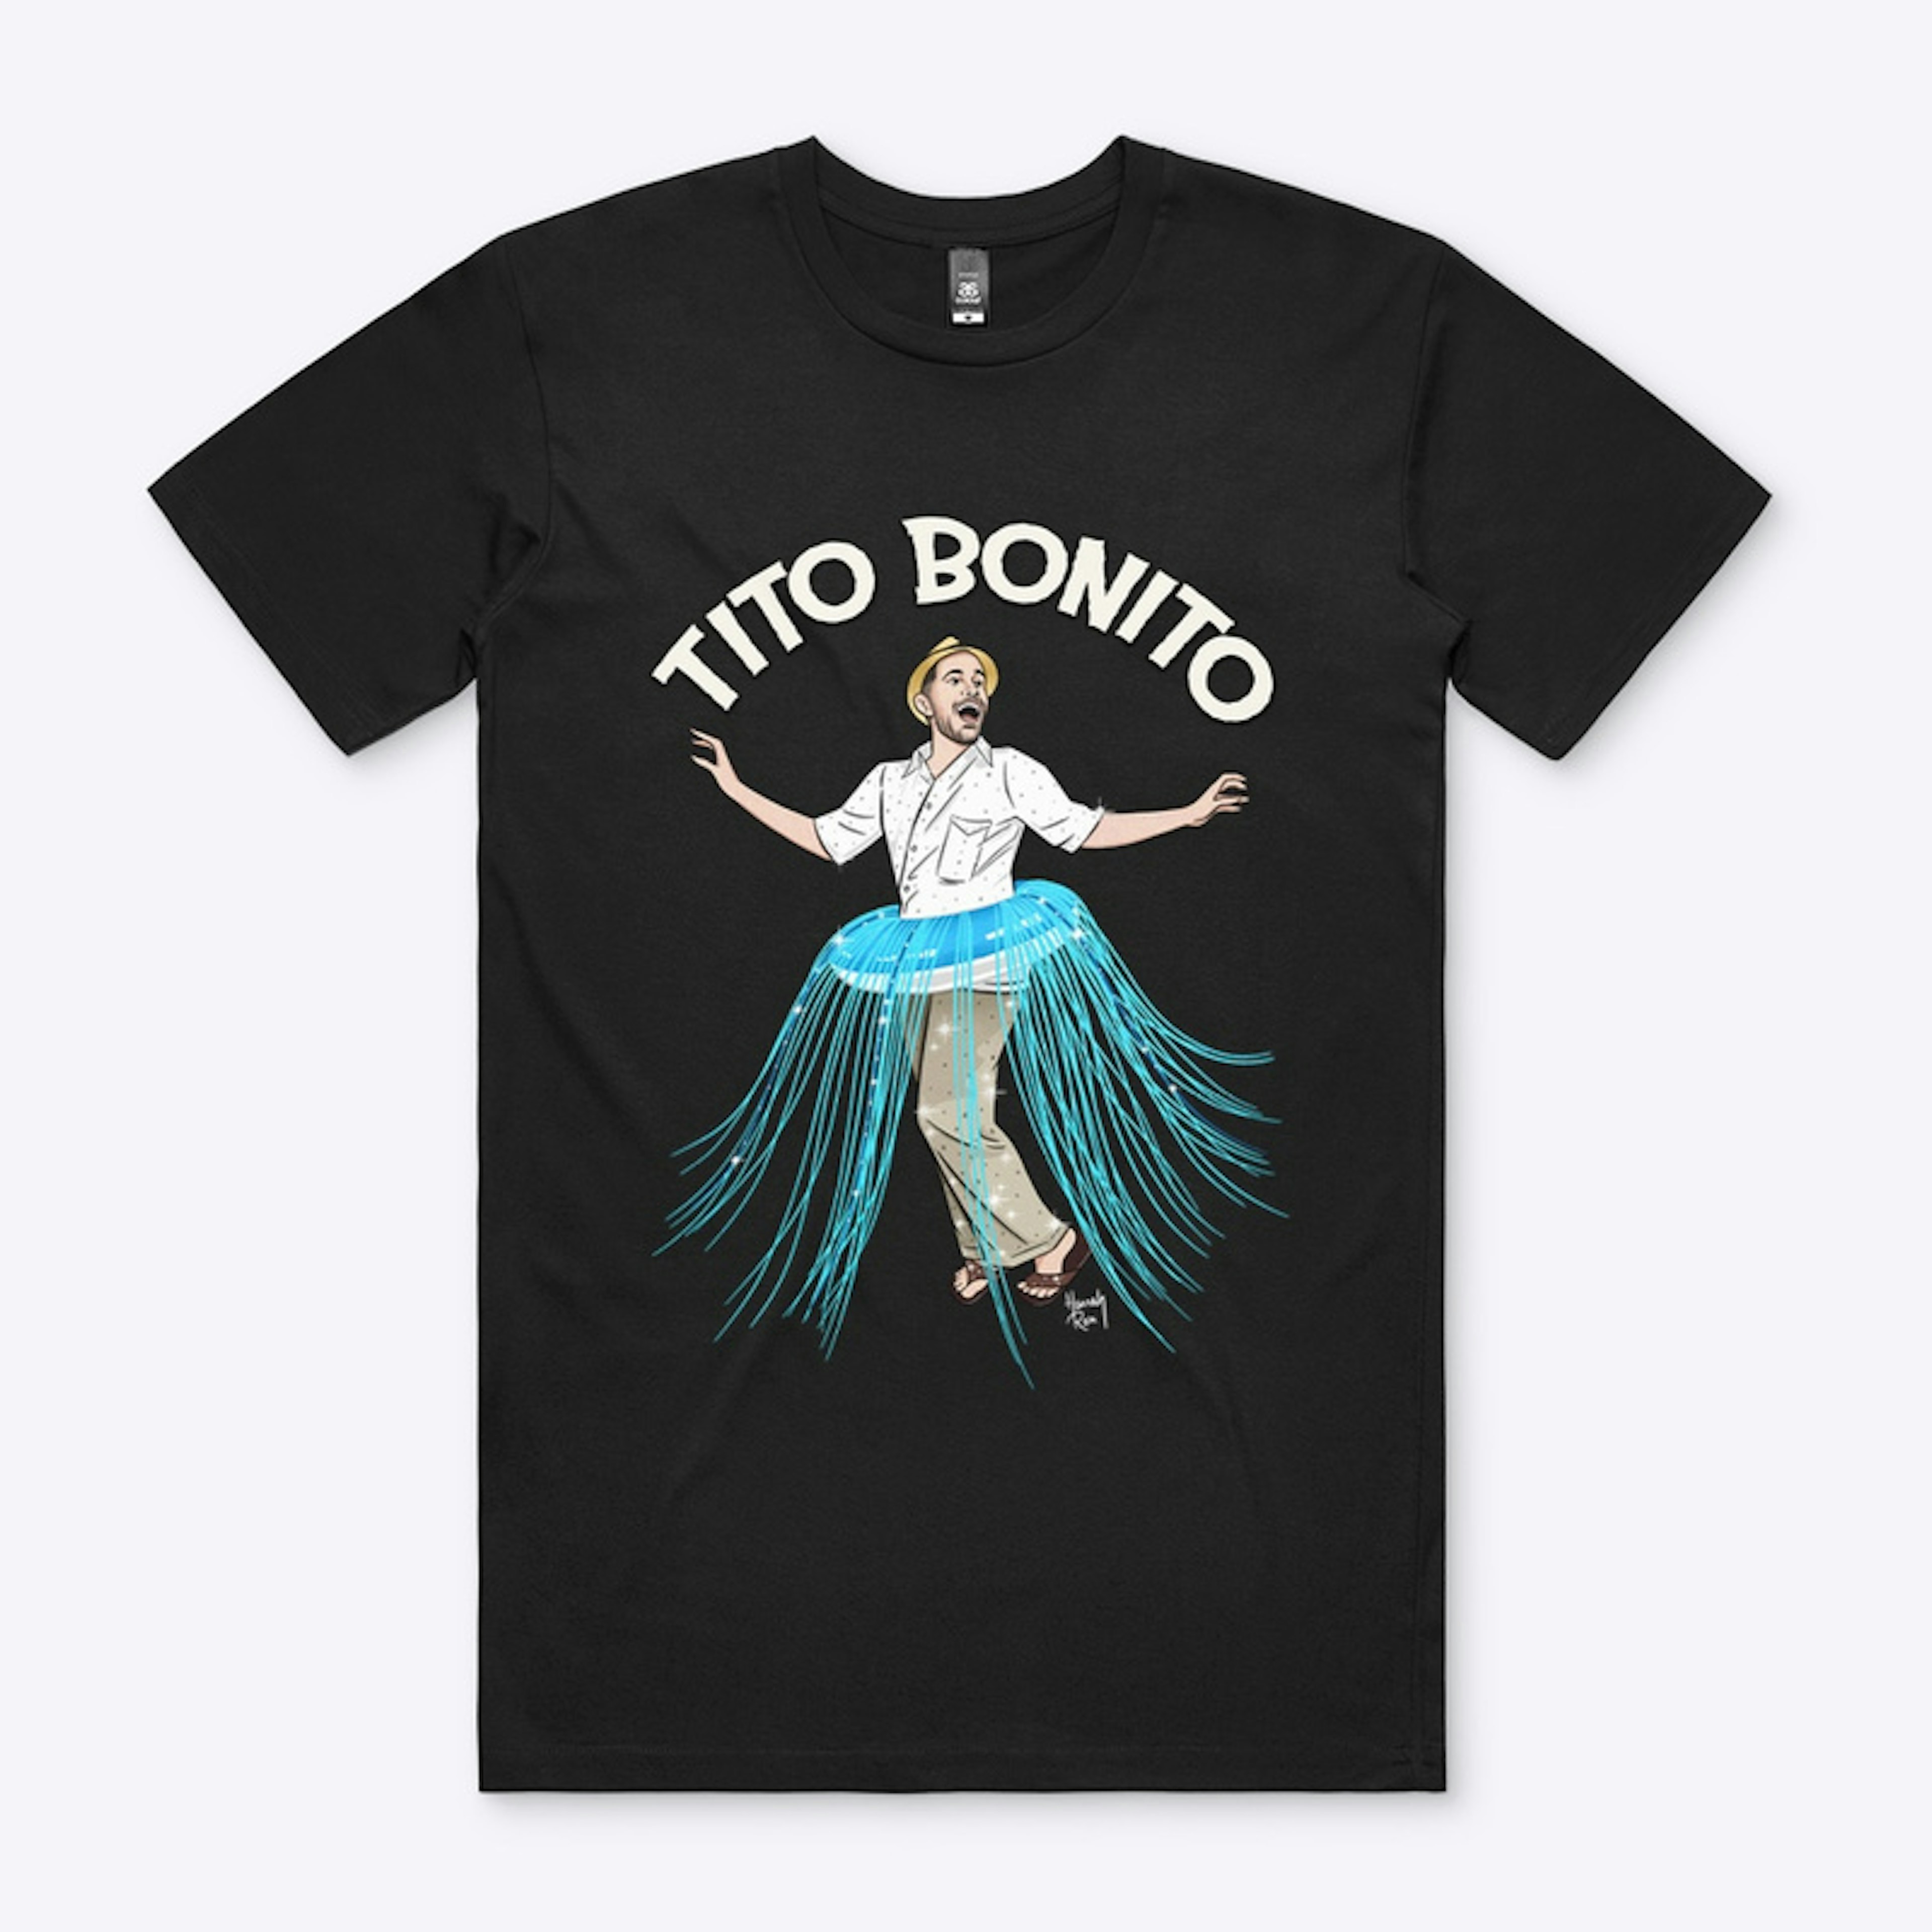 Tito Bonito - Shirt